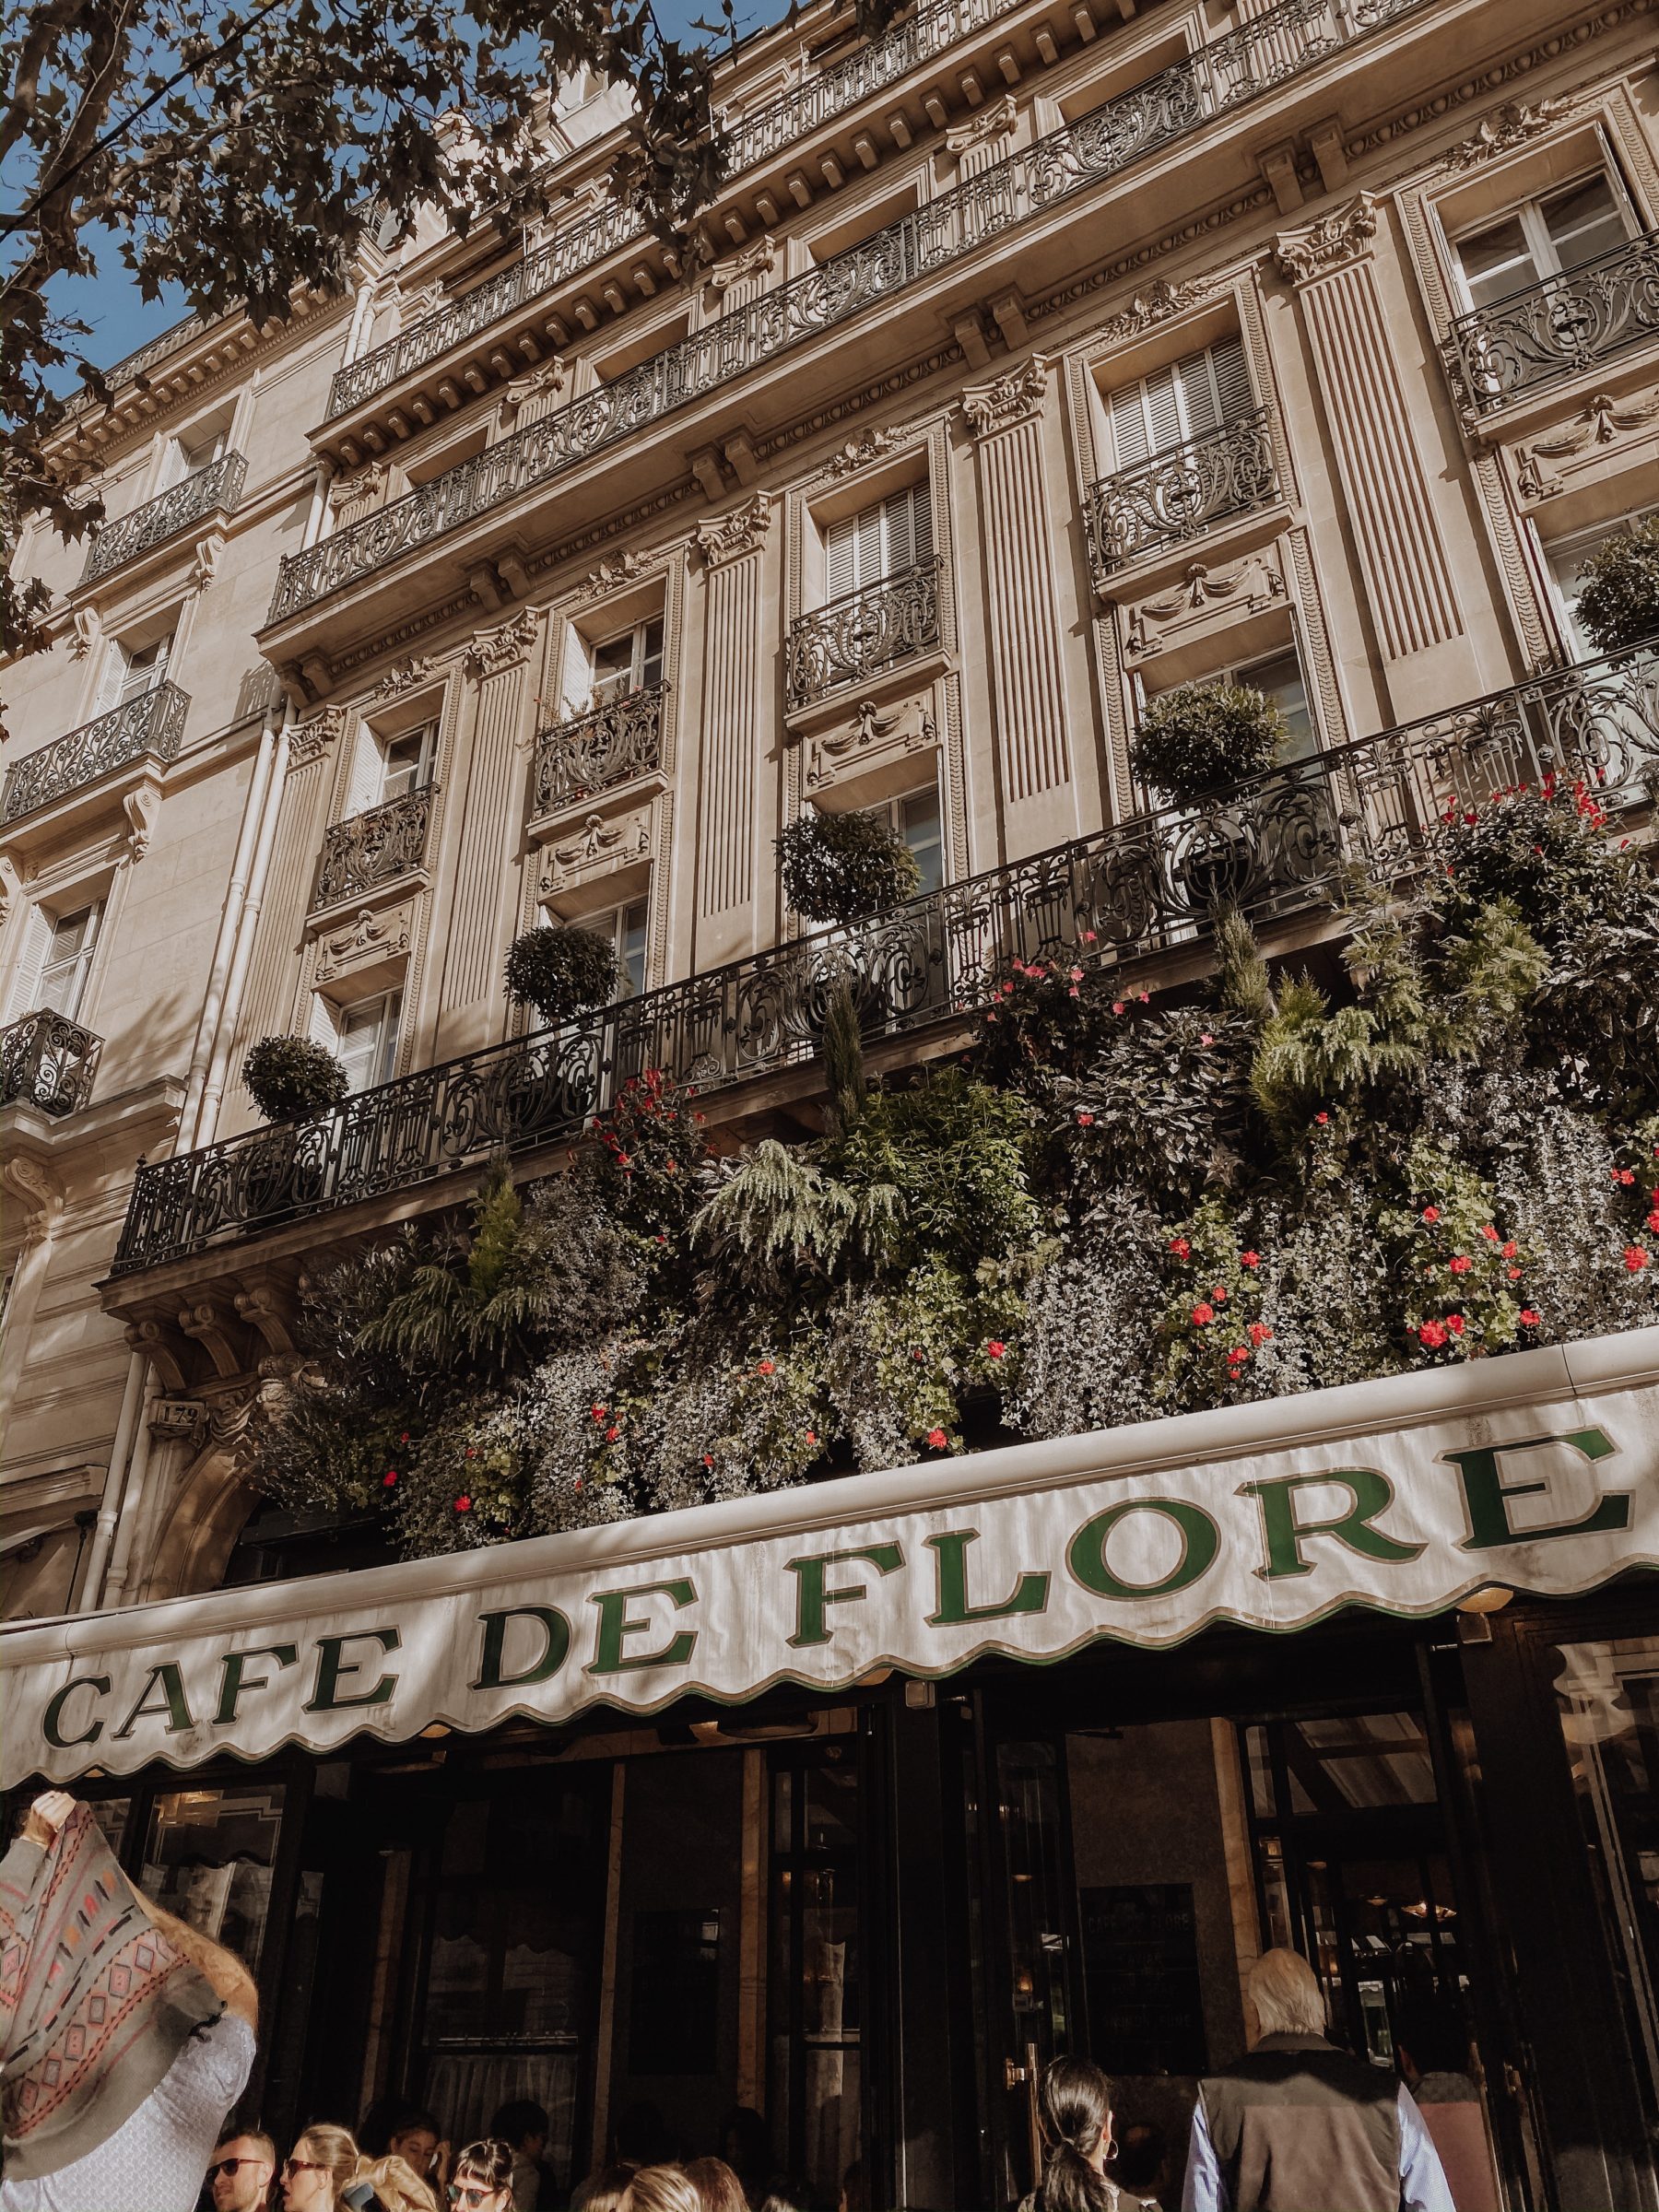 Cafes To Visit in Paris | Paris Cafes | Cafe De Flore | Blondie in the City by Hayley Larue